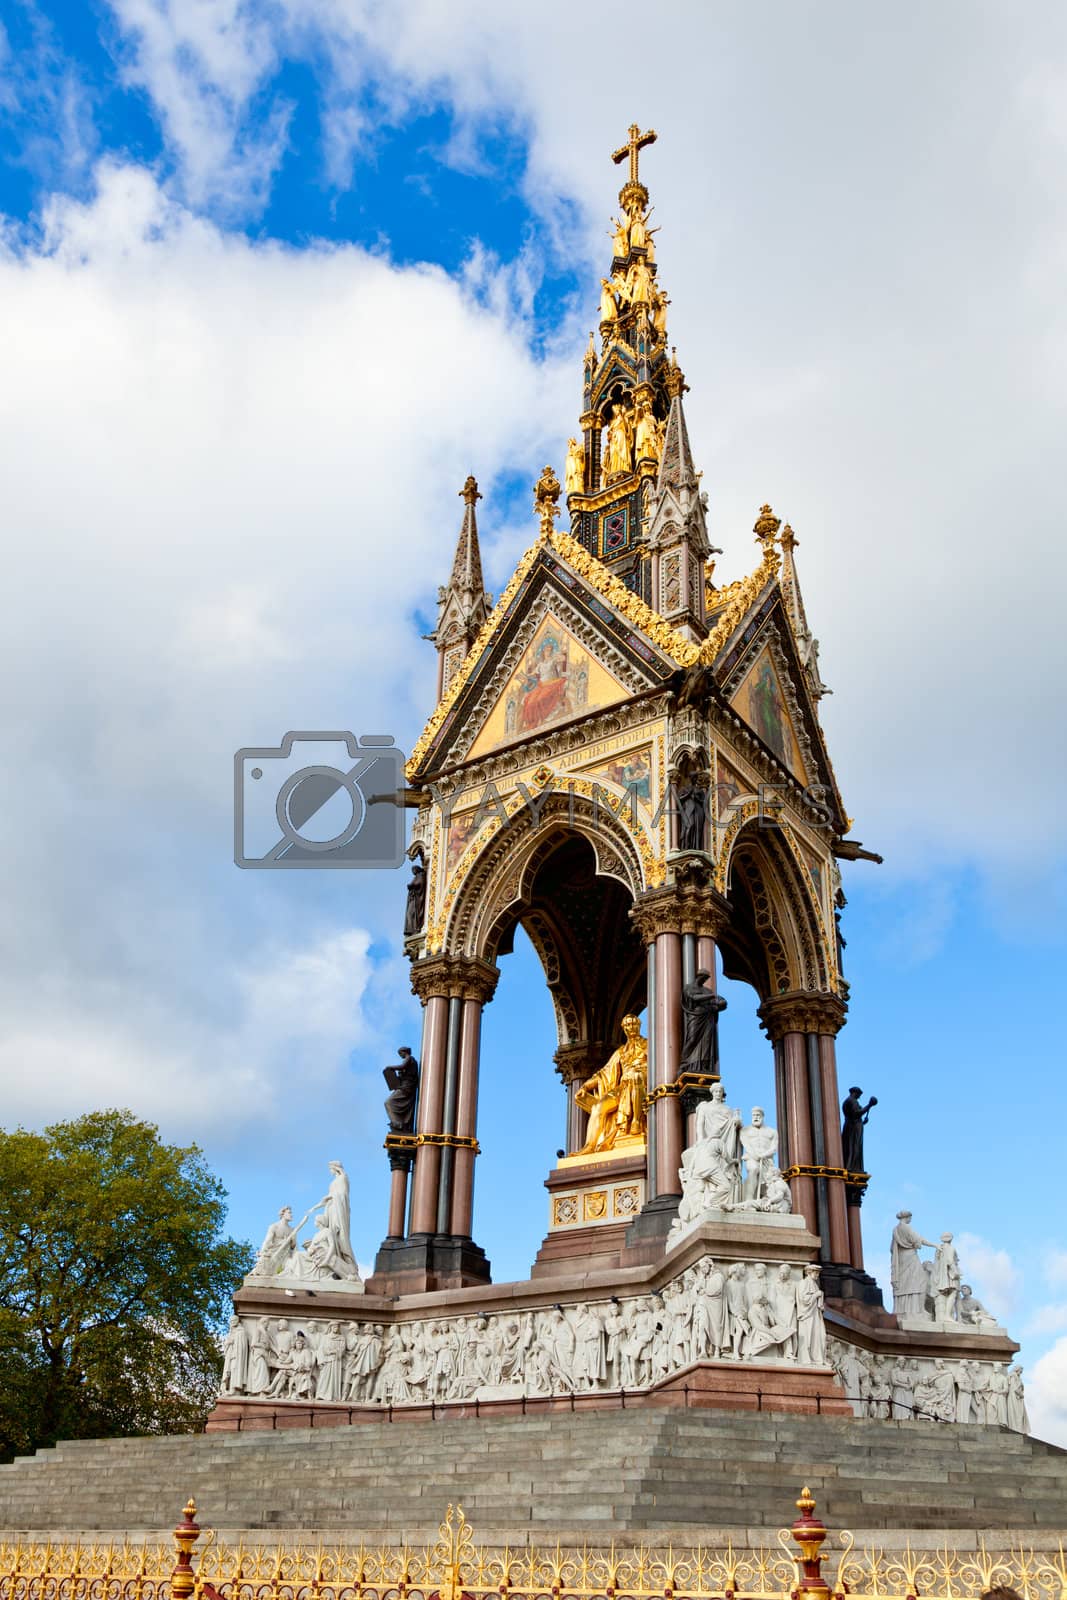 Royalty free image of Albert Memorial in London by naumoid